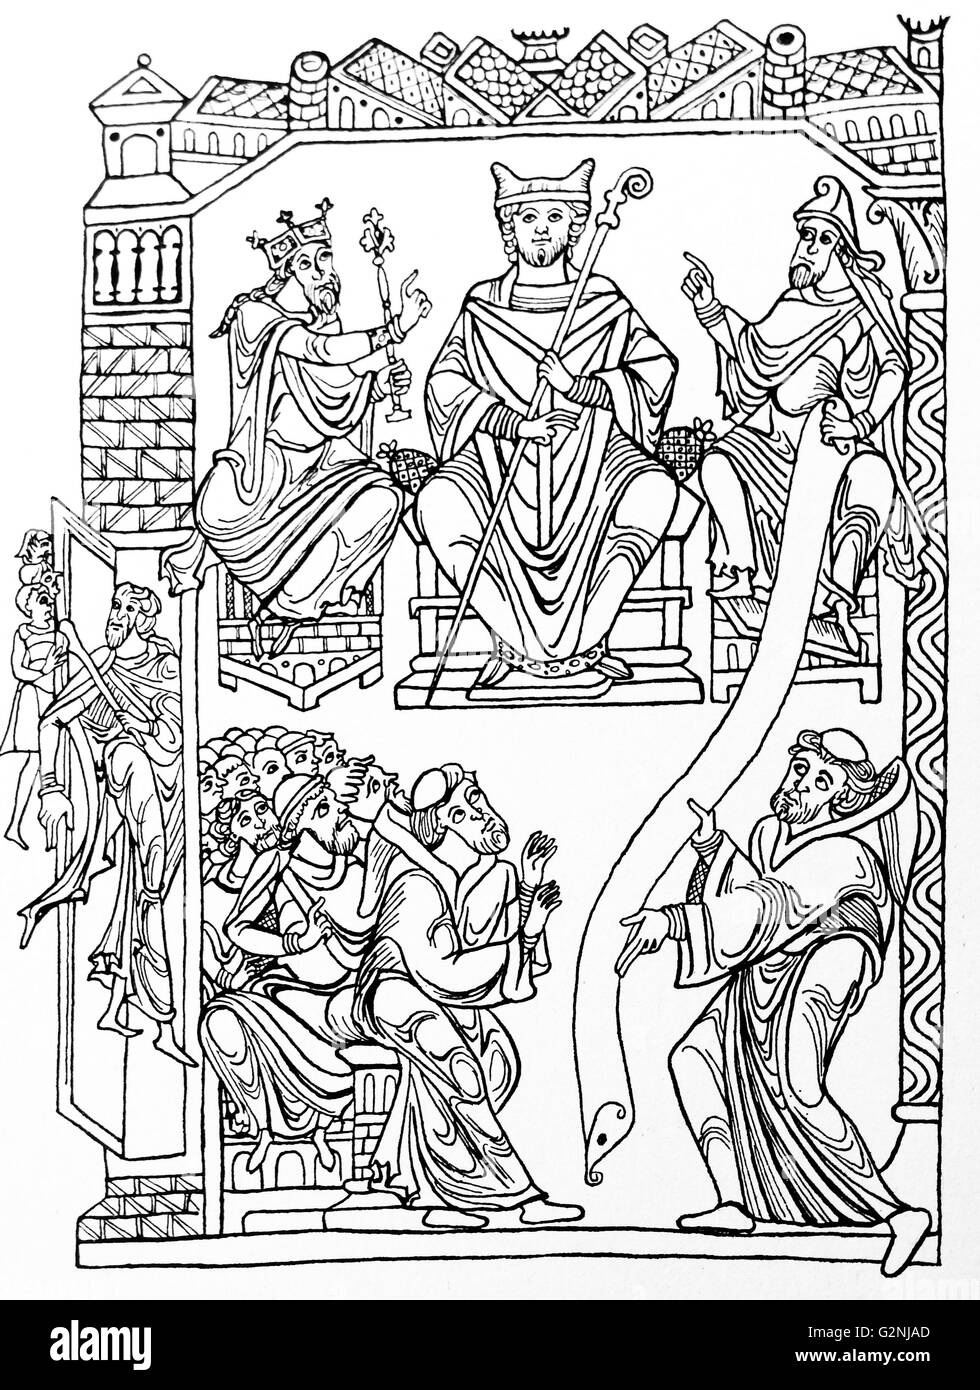 Le dessin des lignes de Saint Benoît de remettre son livre (l'État) à un groupe de moines qui symbolise le fondement du monachisme occidental. En date du 12e siècle Banque D'Images